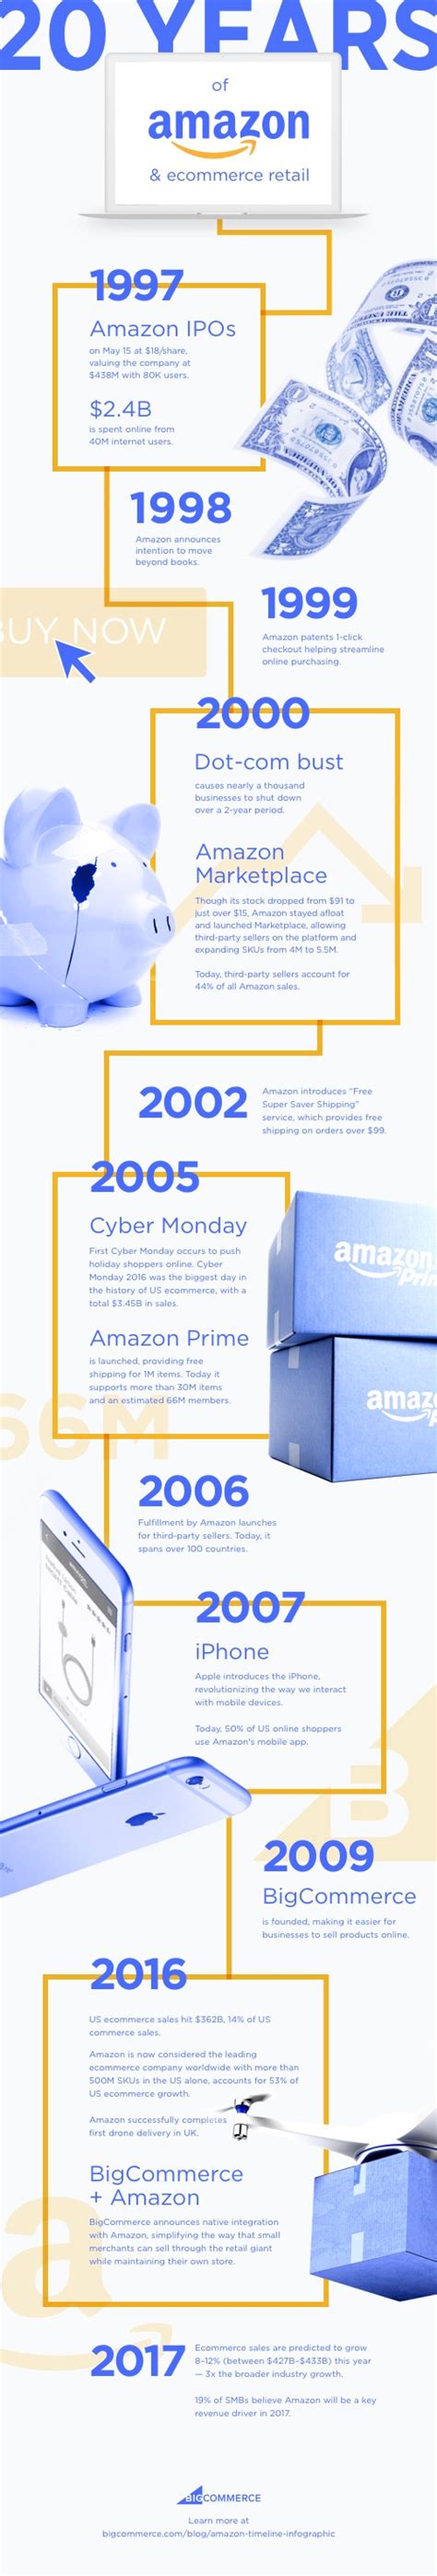 Ook de geschiedenis van de wereld & europa. The Amazon Timeline: 20 Years and 18K% Increase in Sales ...